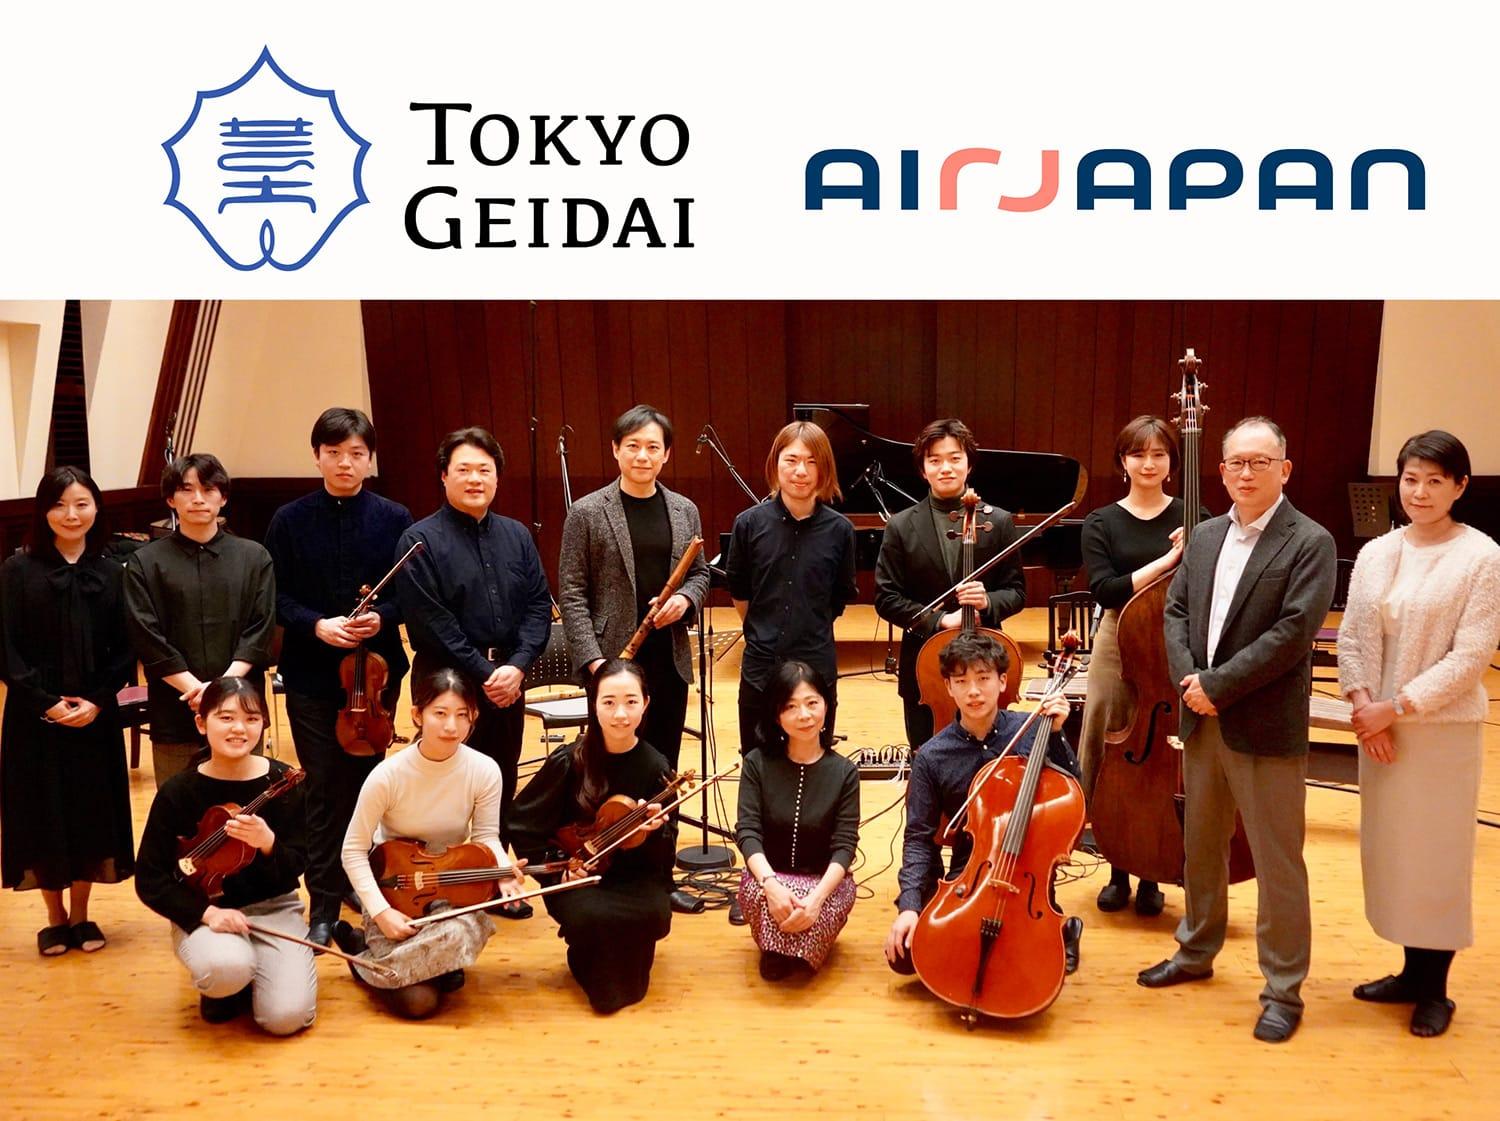 レコーディングの写真：作曲者冷水乃栄流さん、楽曲演奏の皆さん、AirJapan社員が並んでいます。